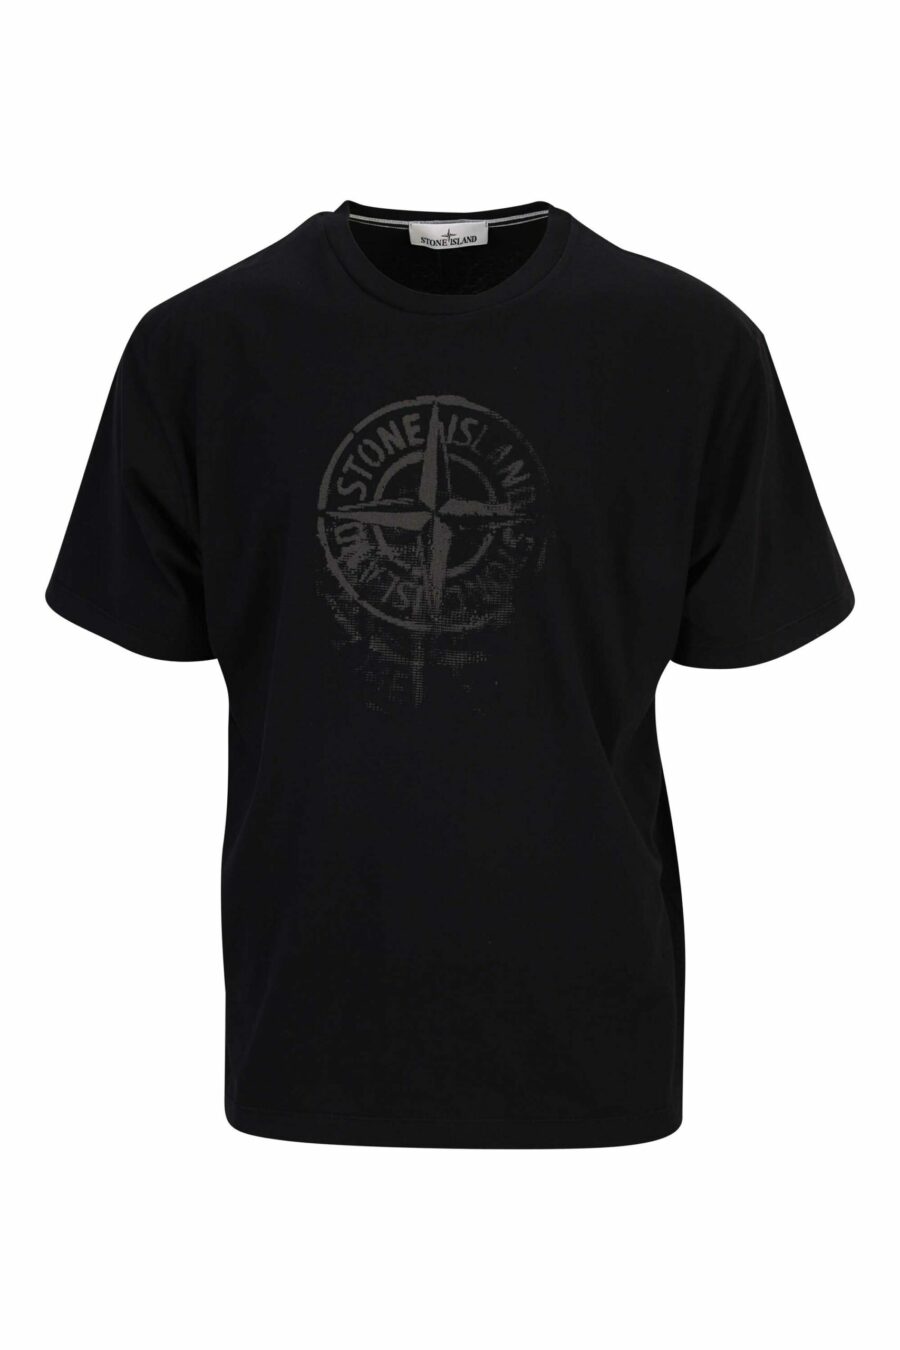 T-shirt noir avec boussole maxilogo - 8052572907272 scaled